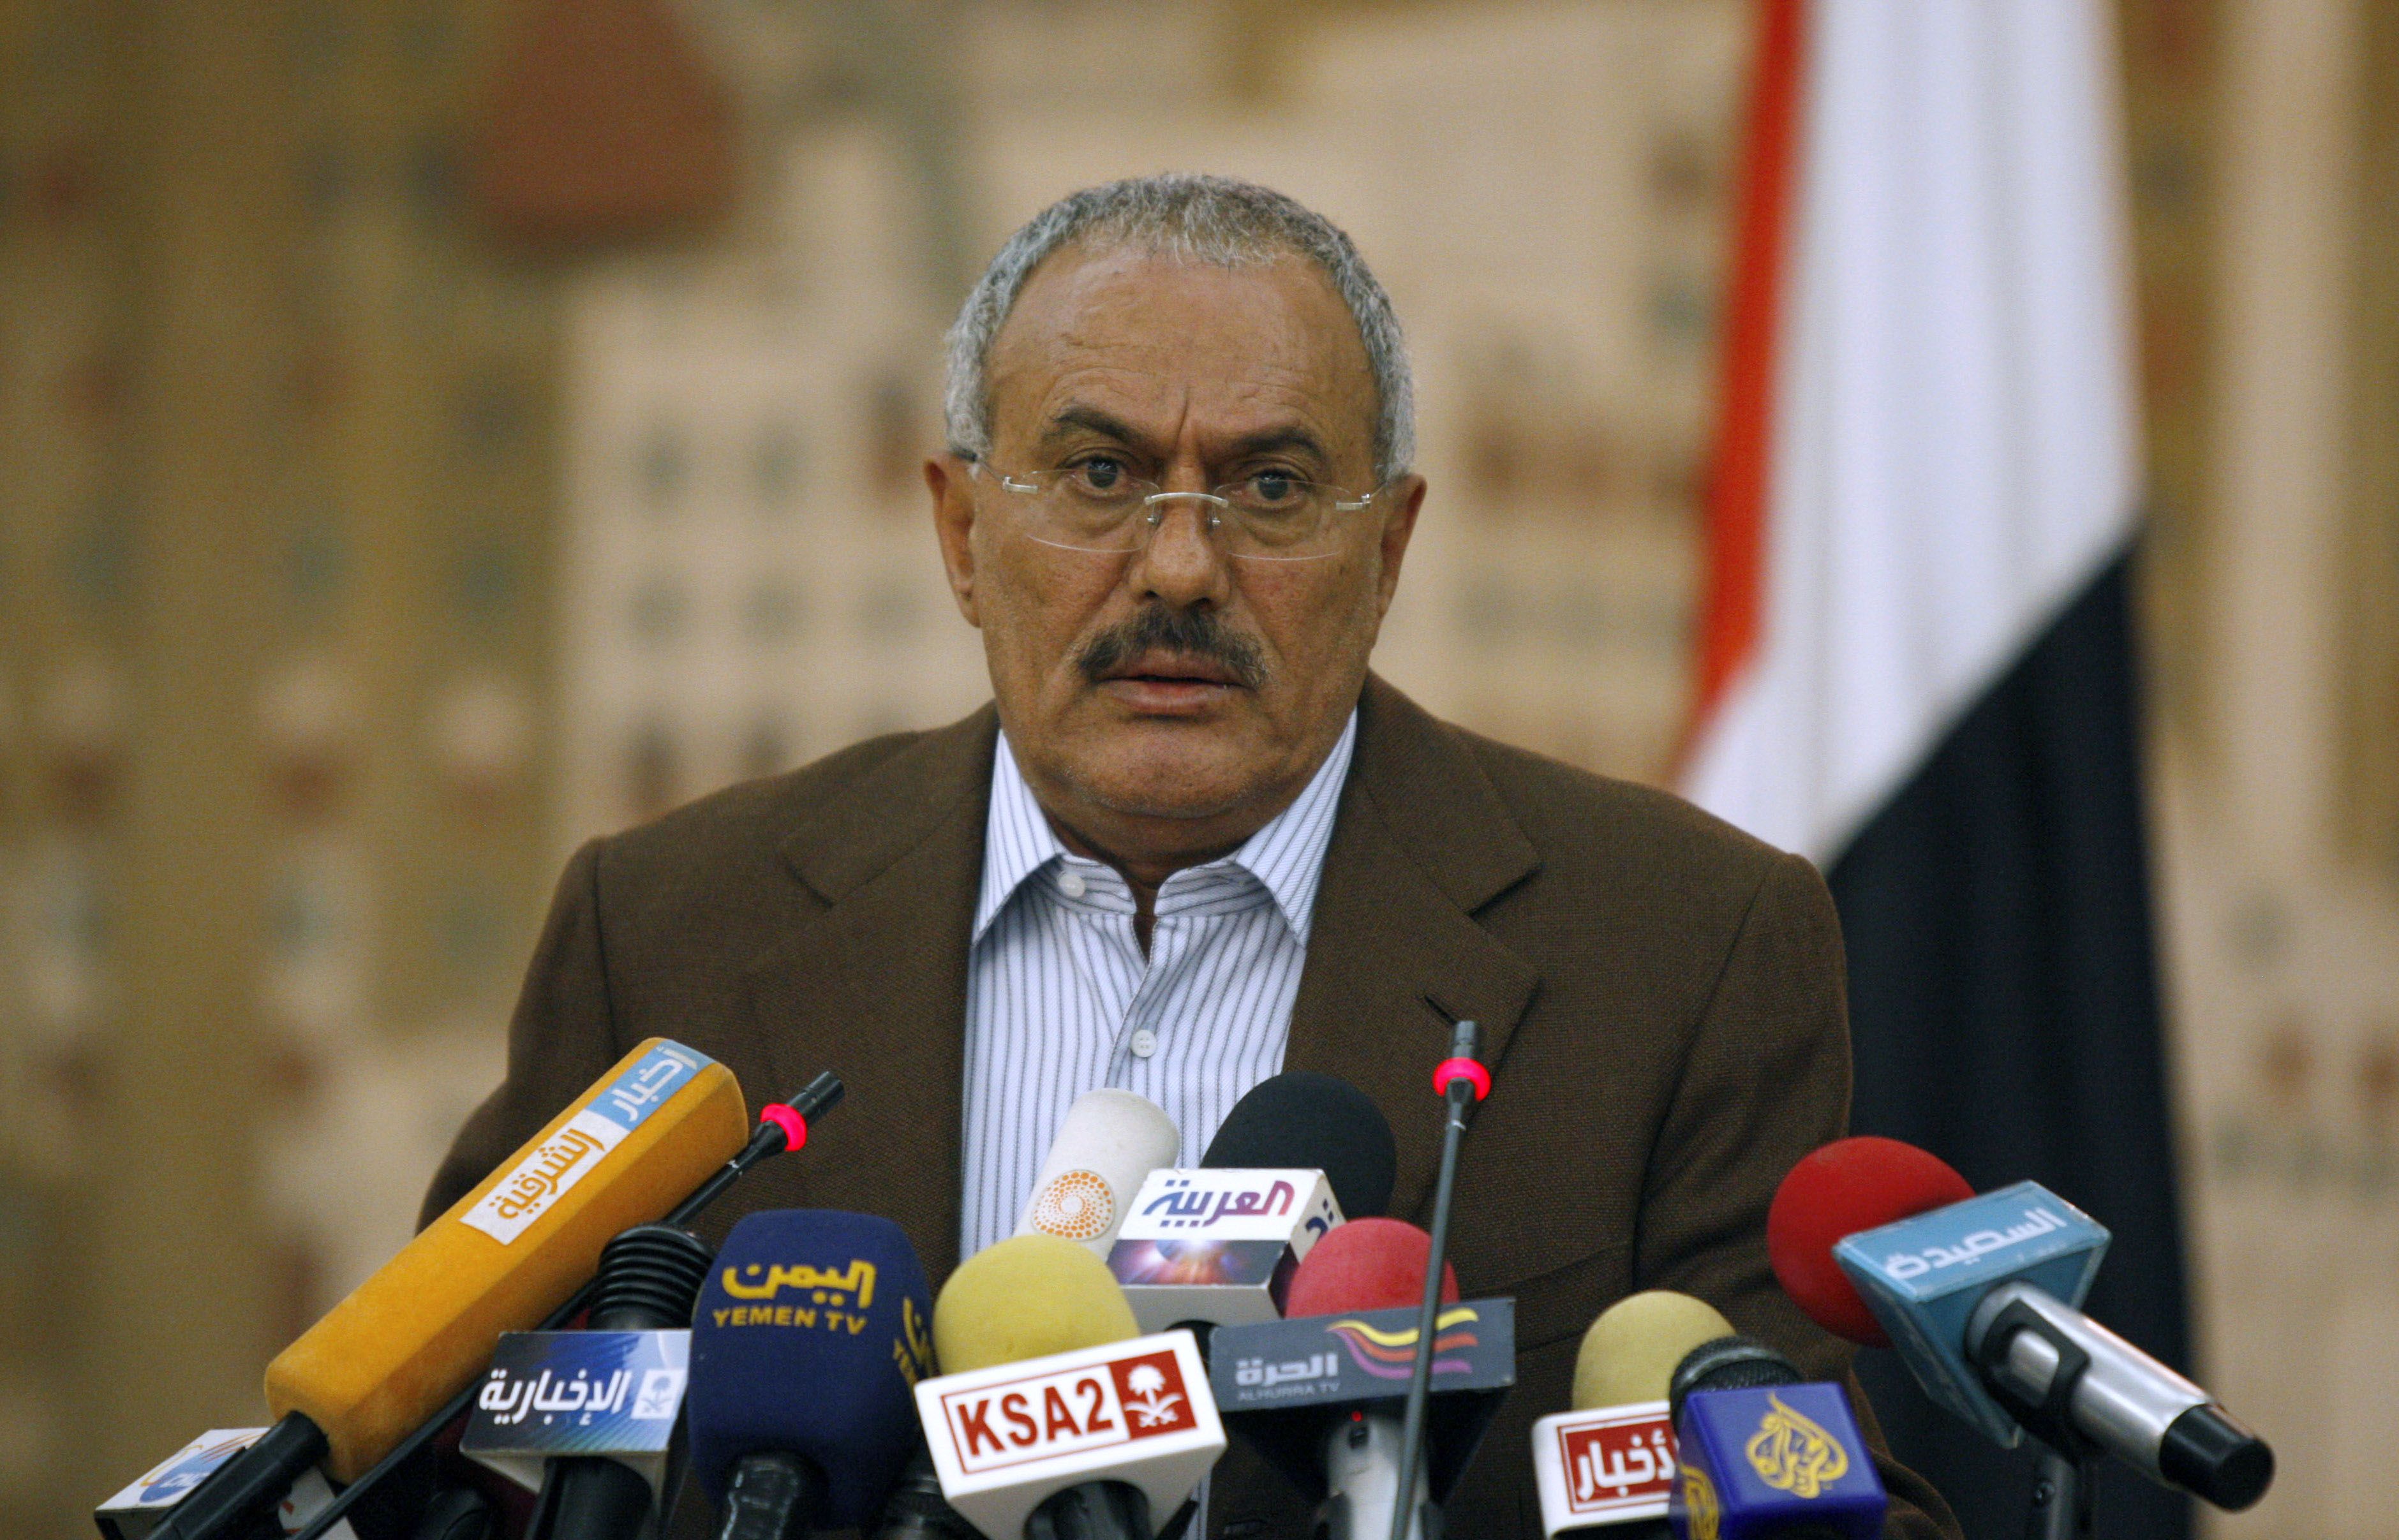 Demonstration, USA, Ali Abdullah Saleh, President, Jemen, Revolution, Uppror, Avgår